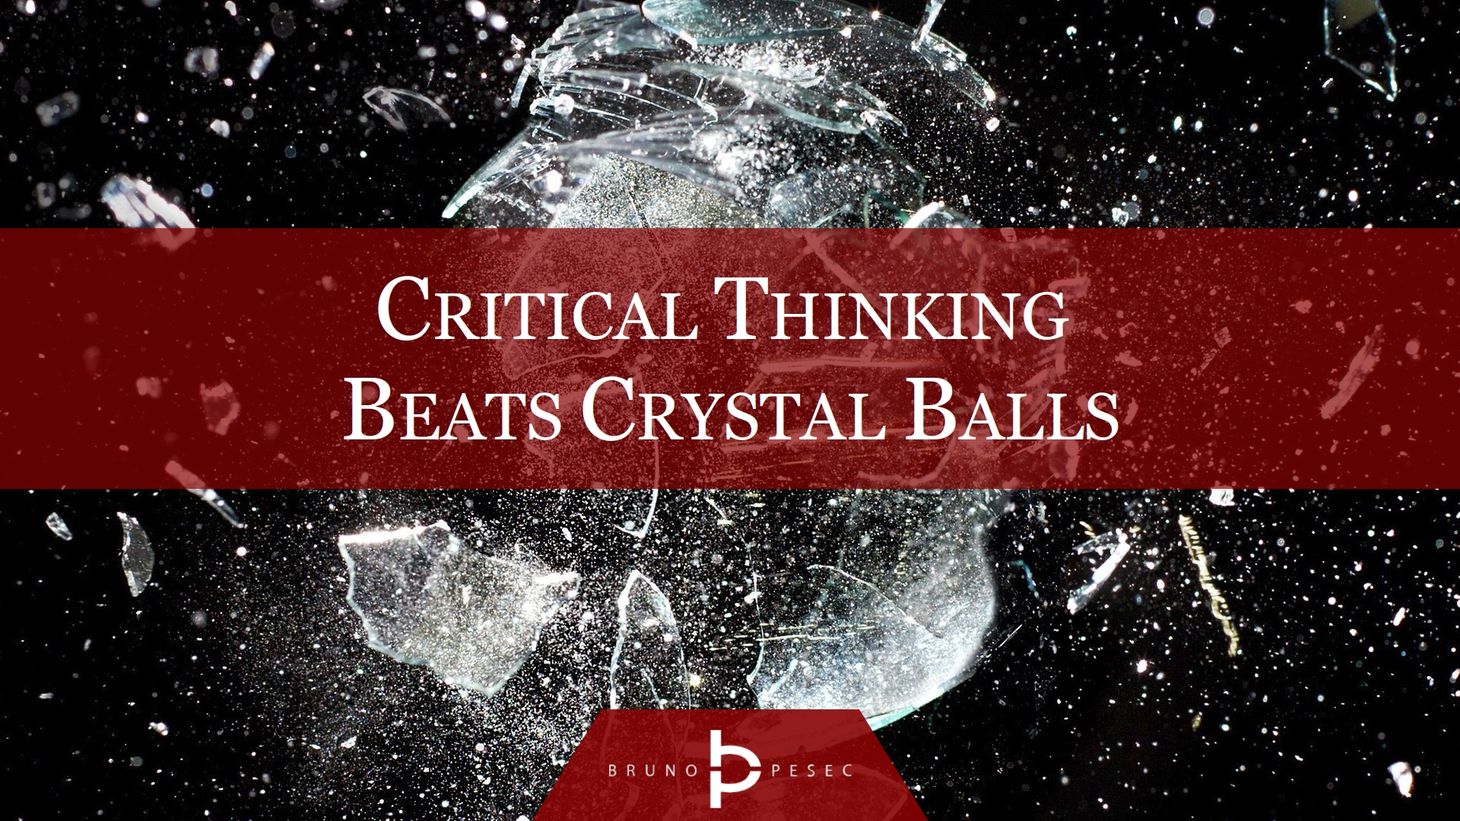 Critical thinking beats crystal balls